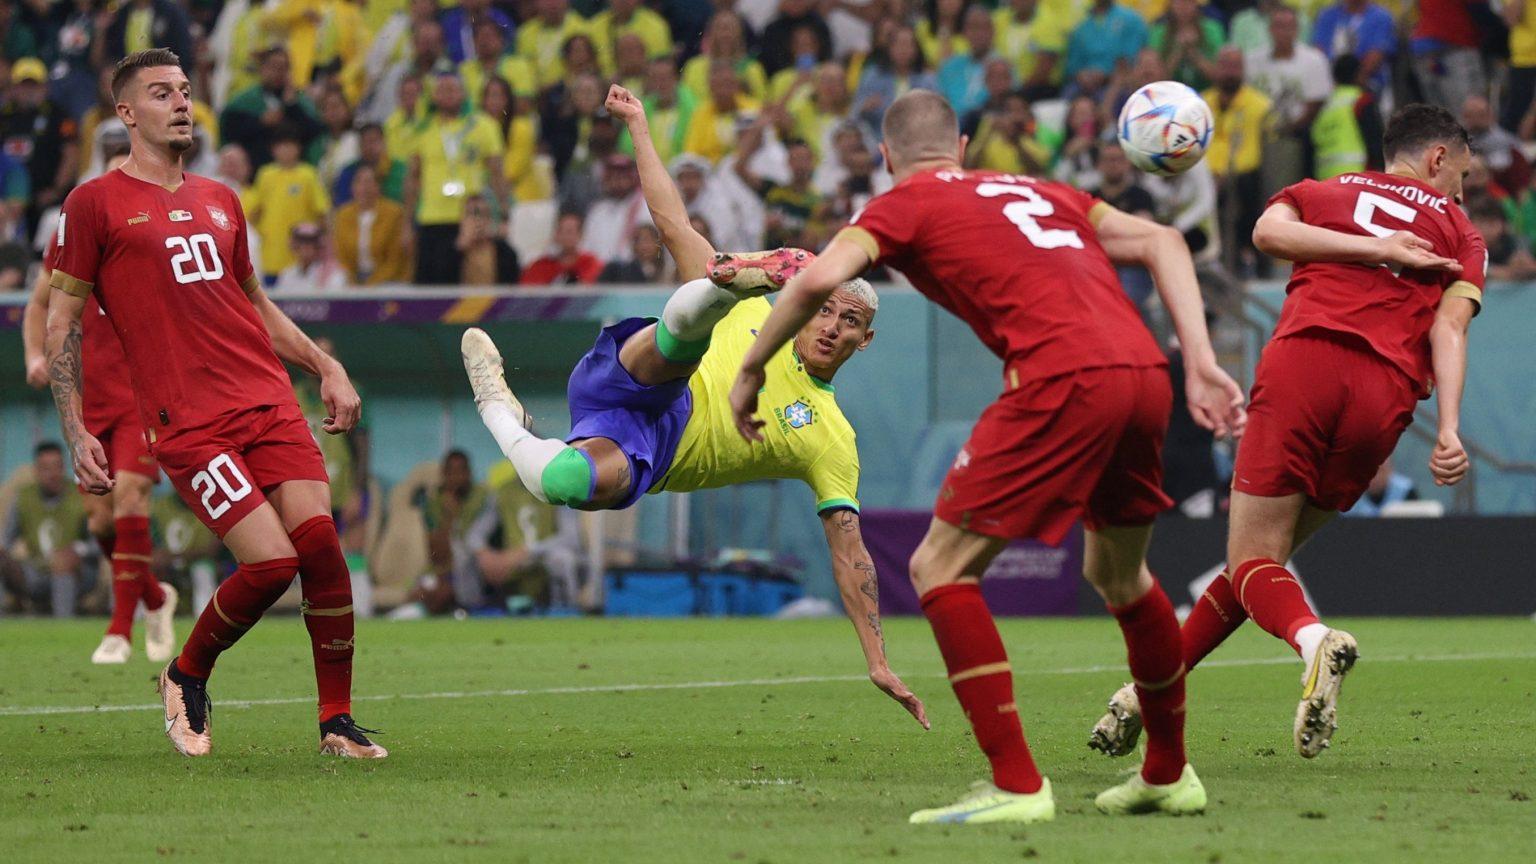 Seleção  Brasileira vence Sérvia e faz a festa do “Torcida Dourados” no Jorjão